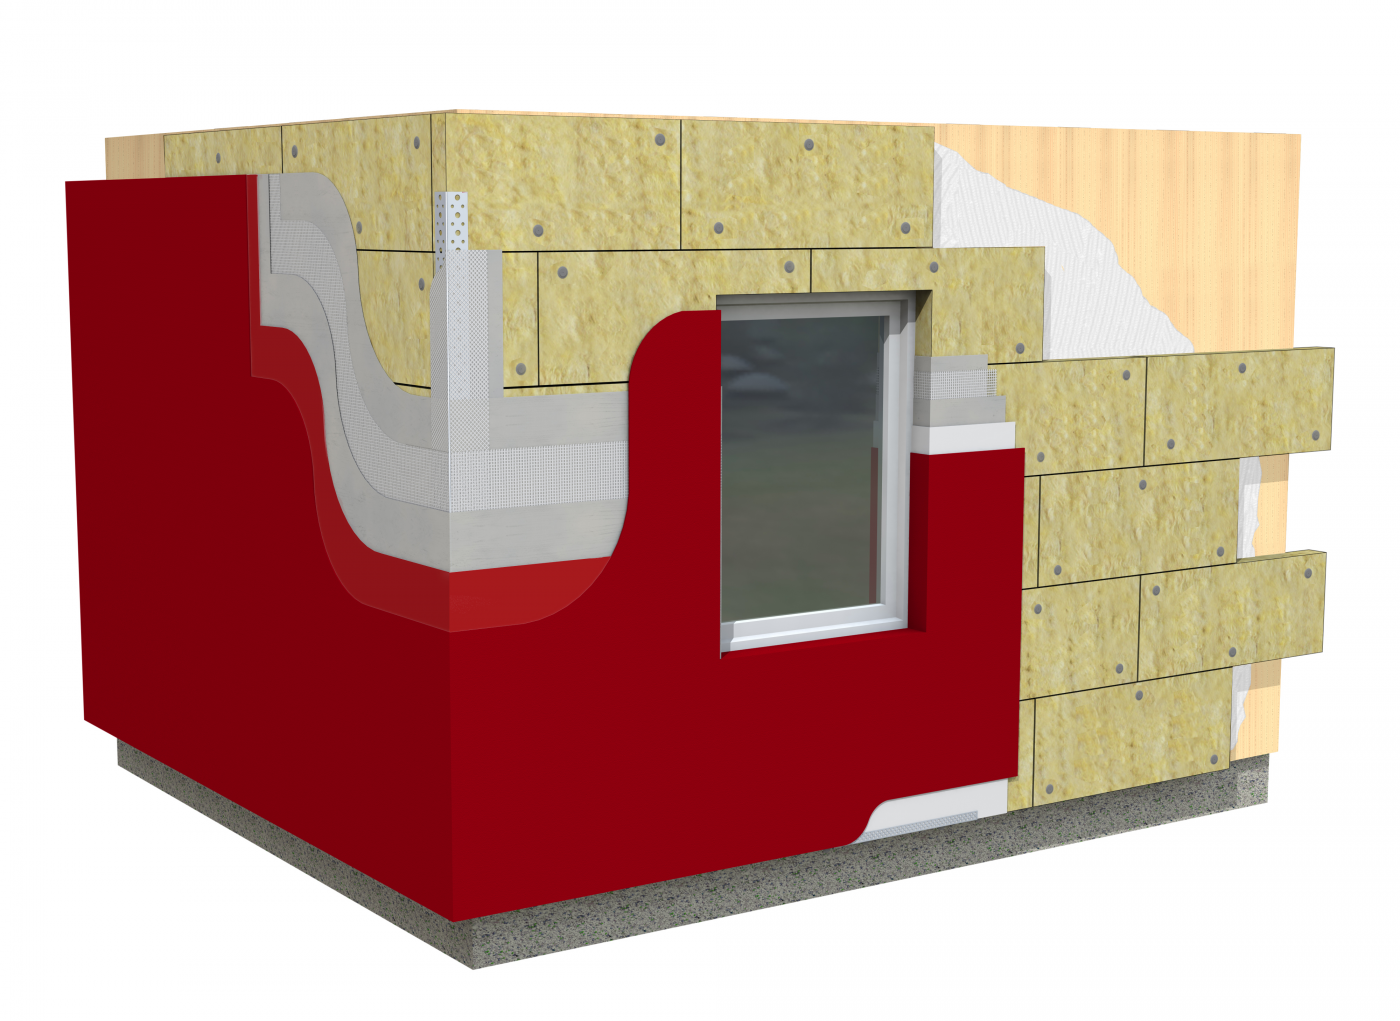 ROCKWOOL lanza un sistema de aislamiento térmico y acústico para fachadas tipo SATE soporte madera